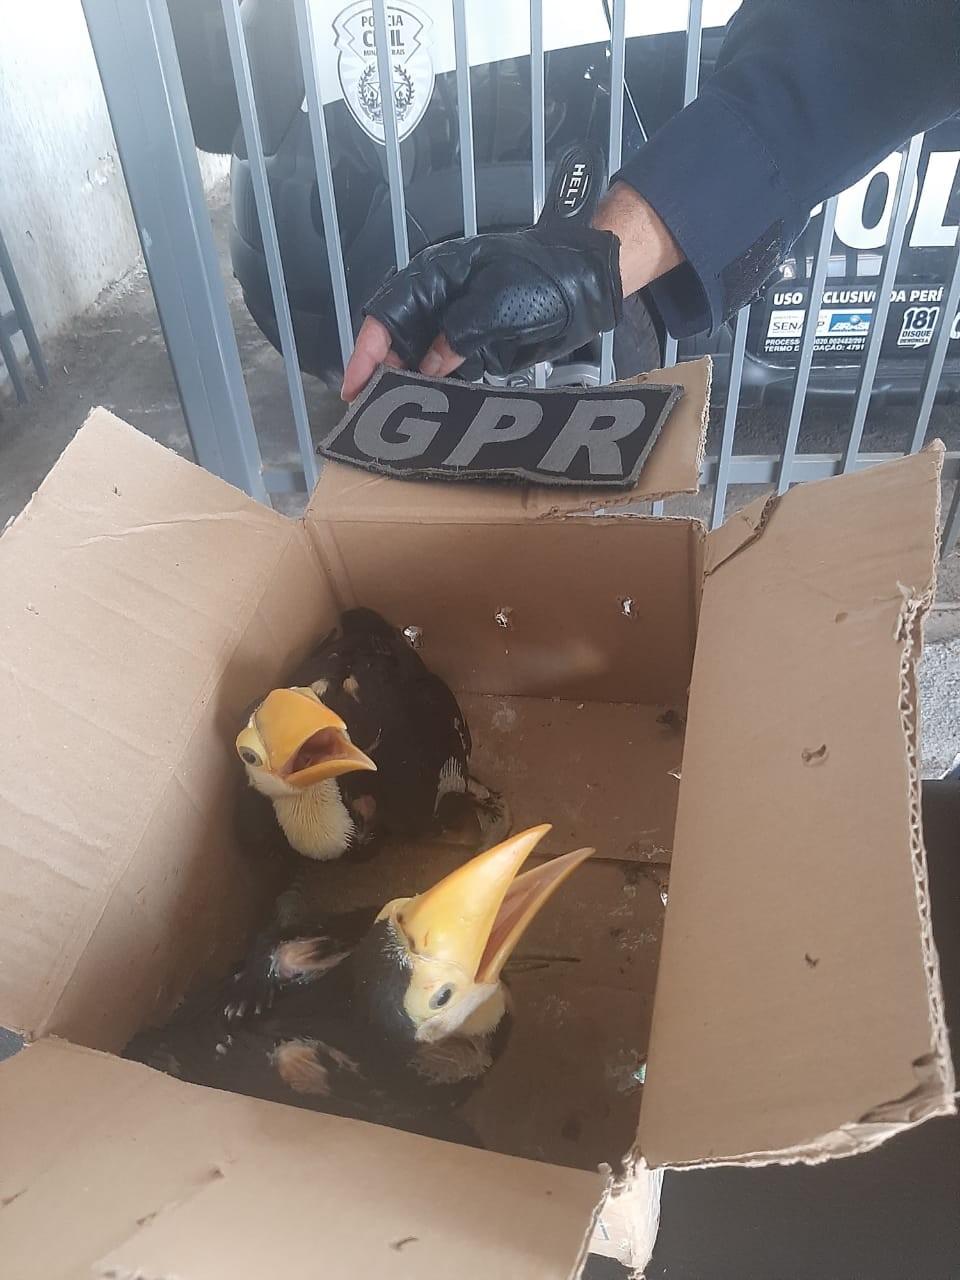 Filhotes de tucano mantidos em caixa de papelão são resgatados em Contagem